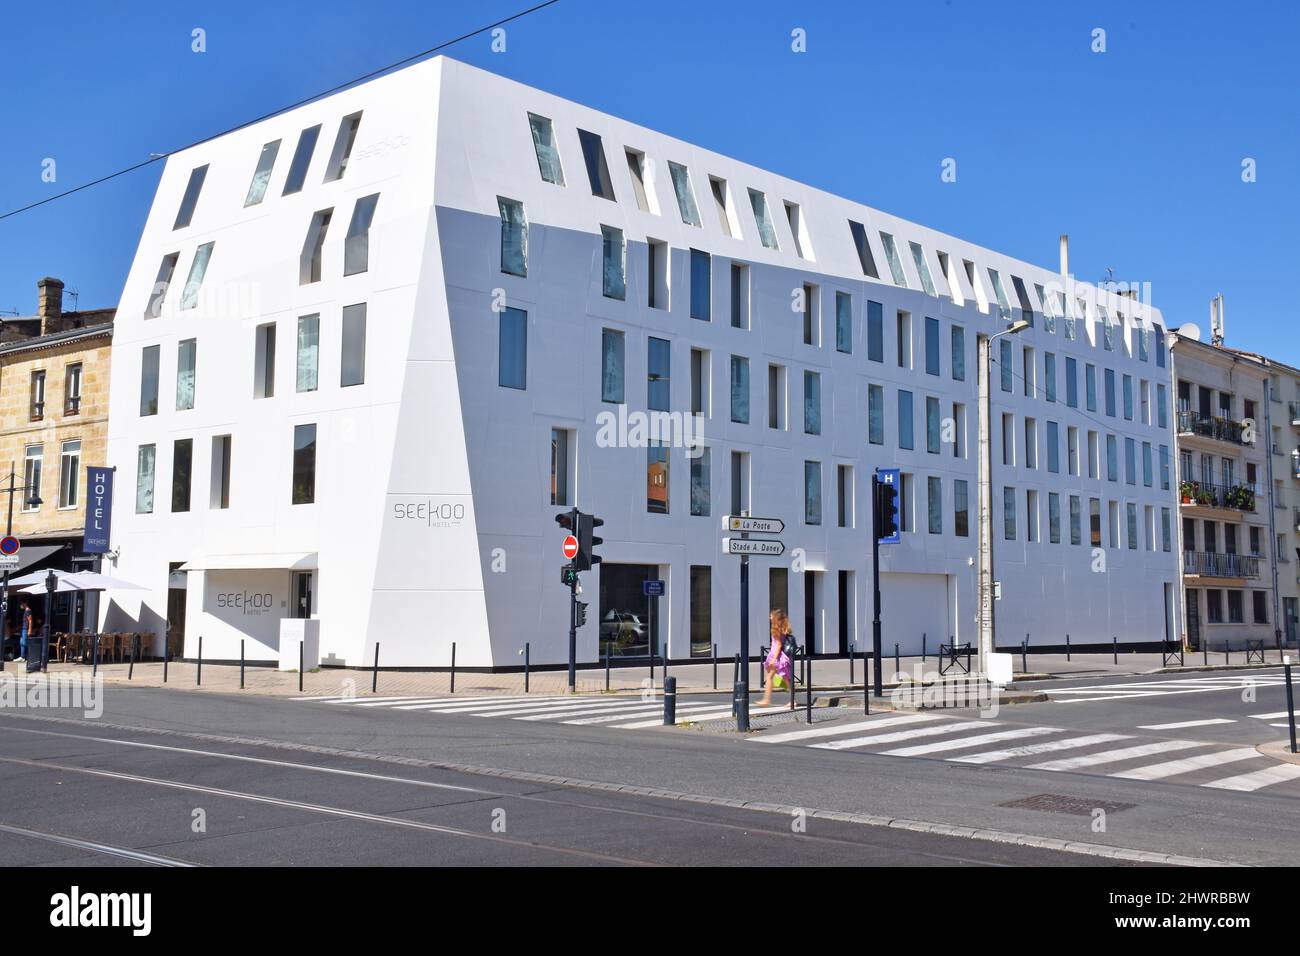 Le Seeko’o Boutique Hotel blanc pur sur le Quai de Bacalan, dans une partie récemment revitalisée du front de mer de Bordeaux Banque D'Images